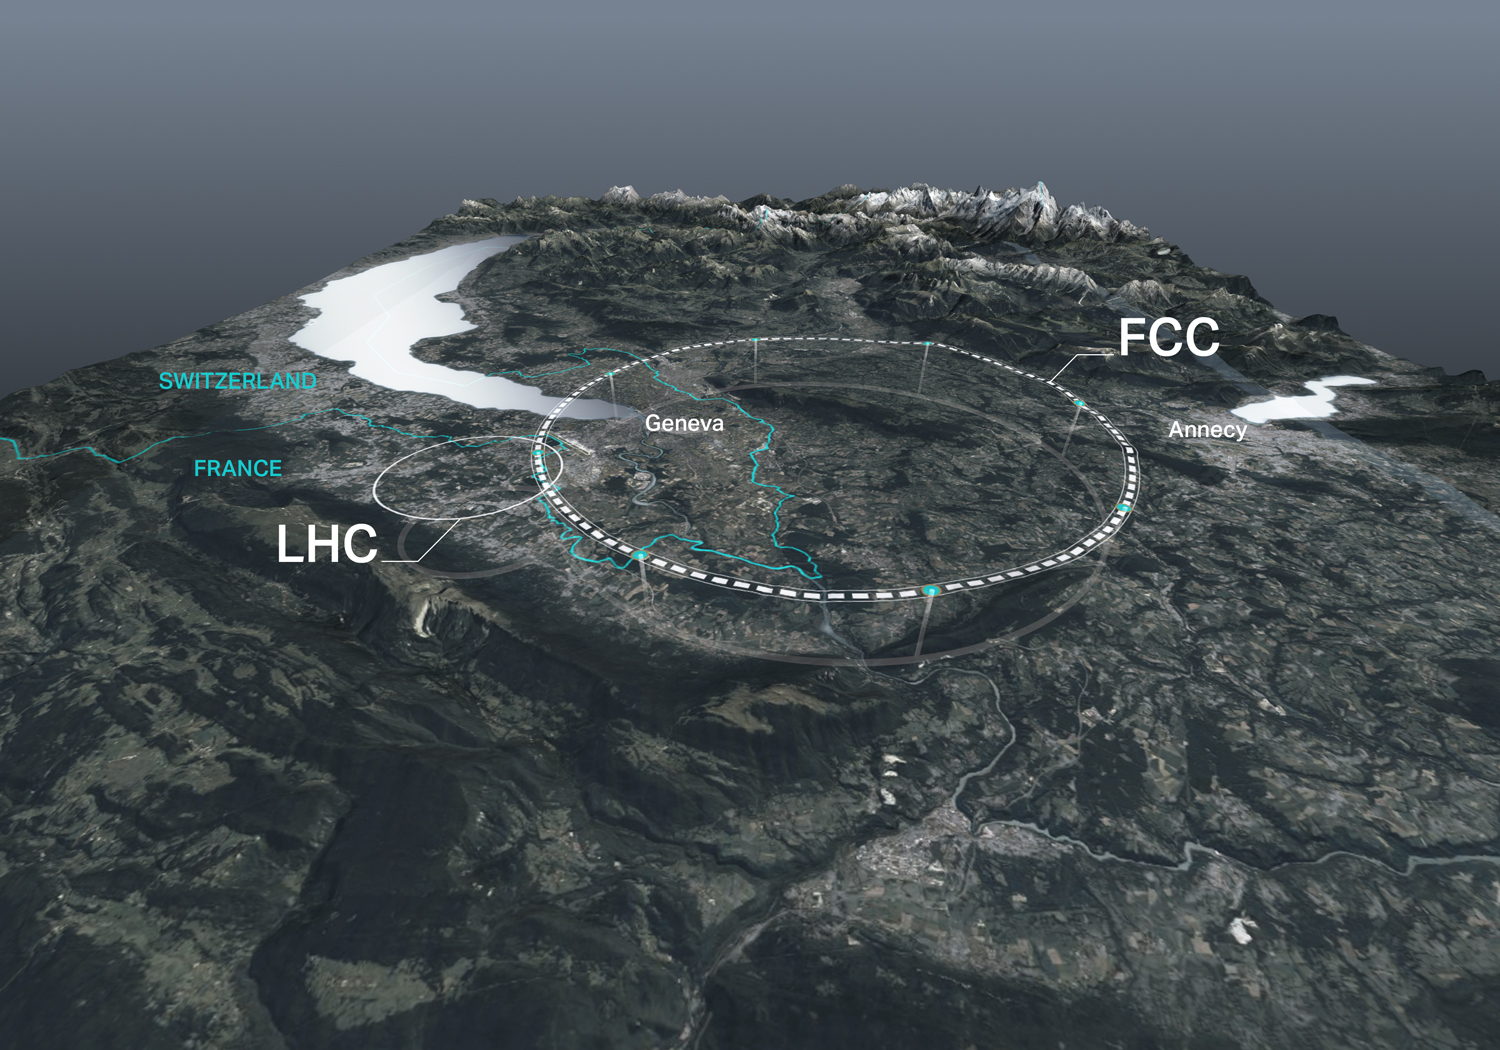 Die Grafik zeigt die Lage der Teilchenbeschleuniger in der Schweiz und in Frankreich in der Umgebung der Stadt Genf.